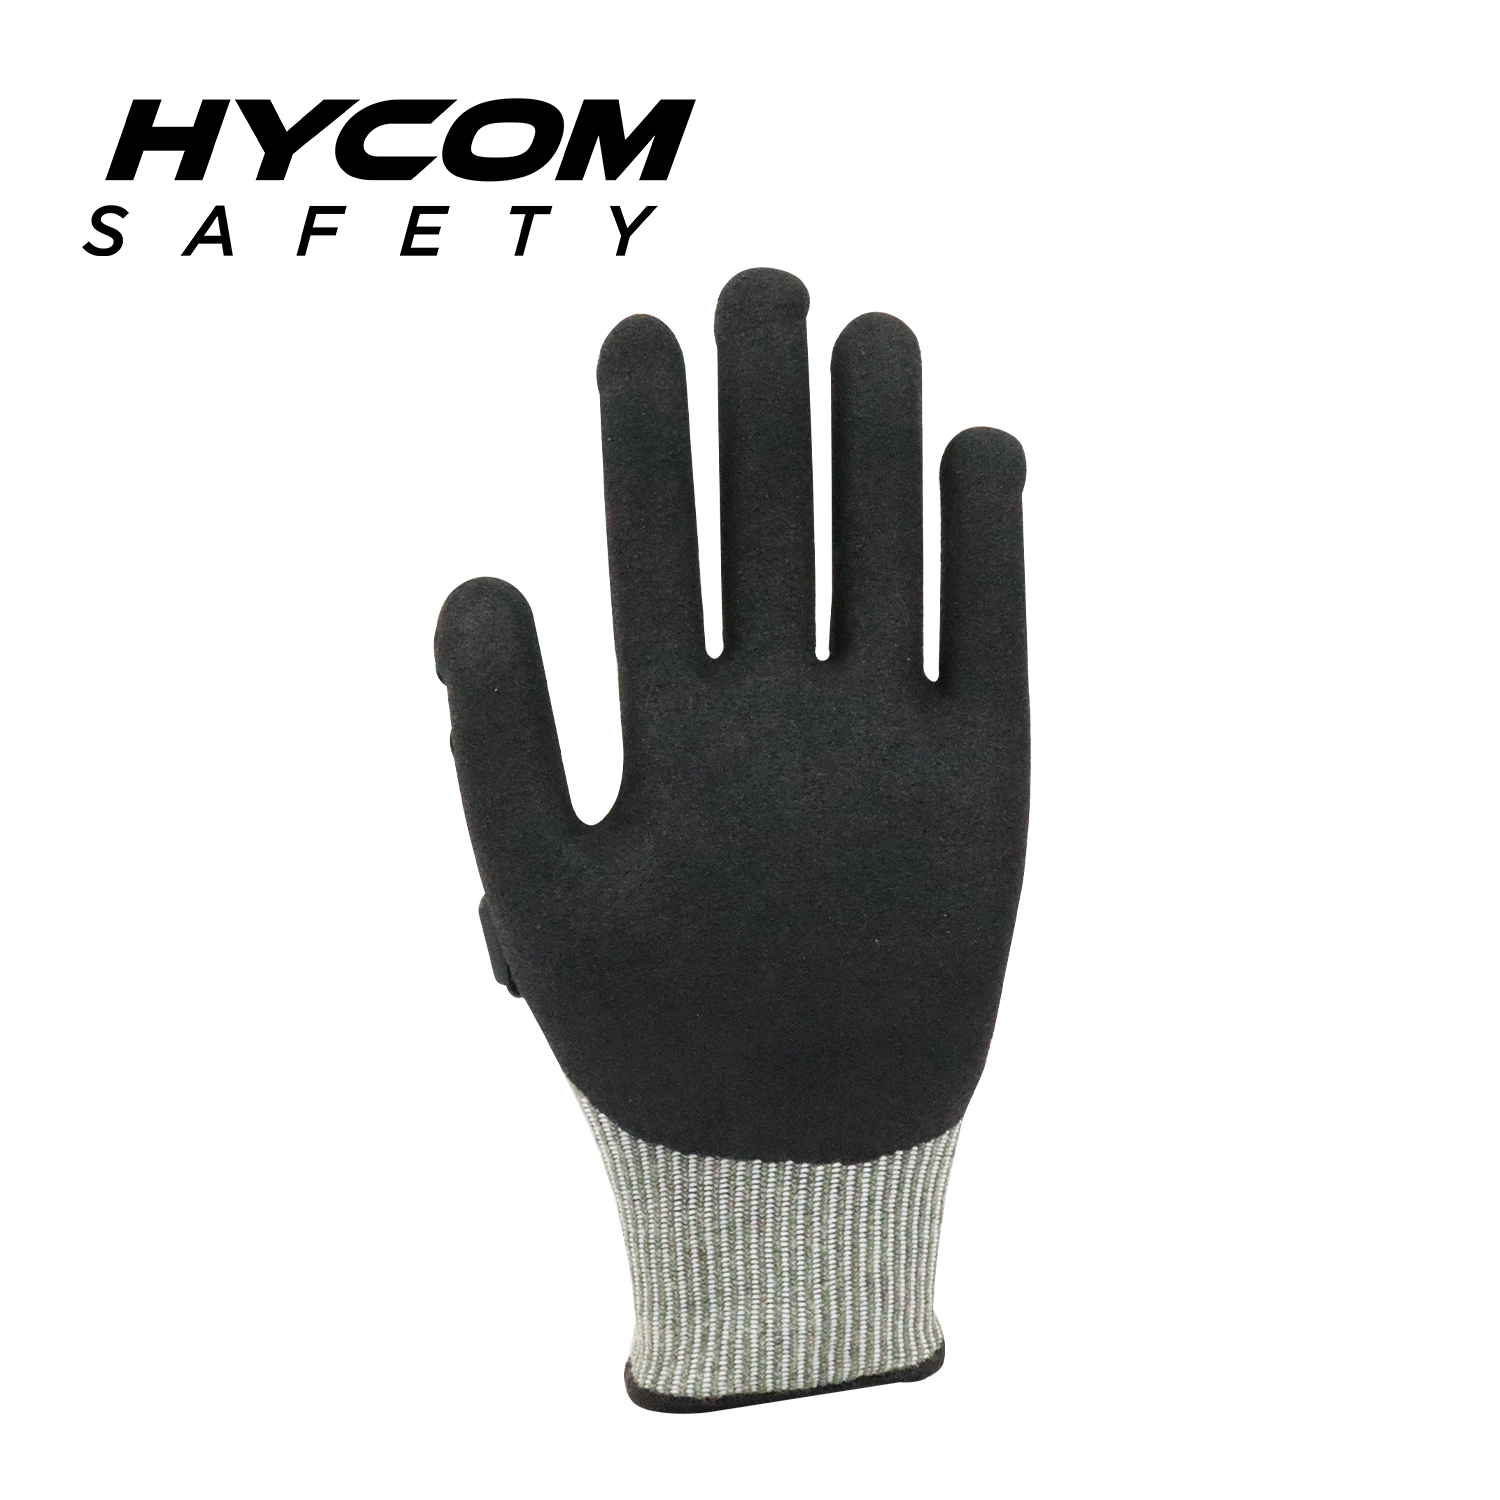 HYCOM 13G-Schnittschutzhandschuh gemäß ANSI 9 mit Atemschnitt und Aramid-Arbeitshandschuhen mit Sandy-Nitril- und TPR-Beschichtung